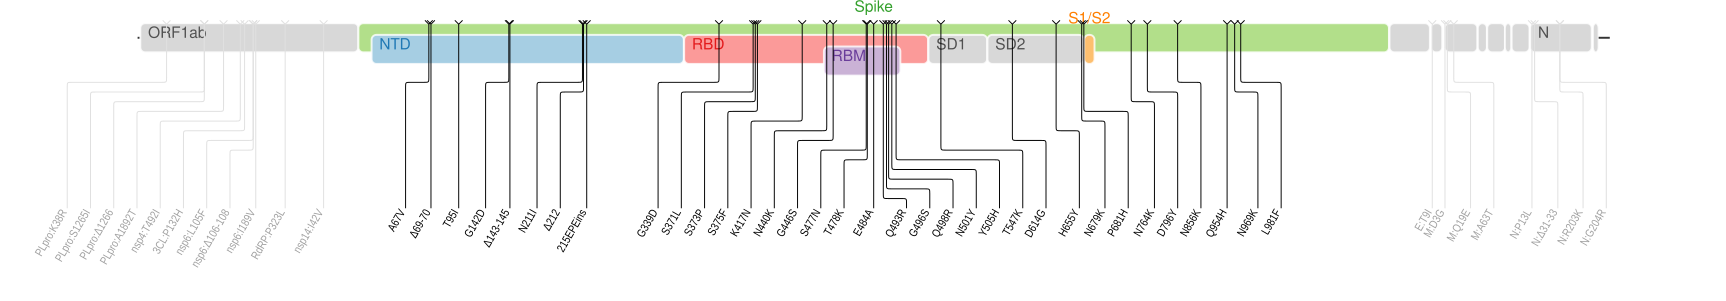 奥密克戎变异株的基因组序列如上图所示